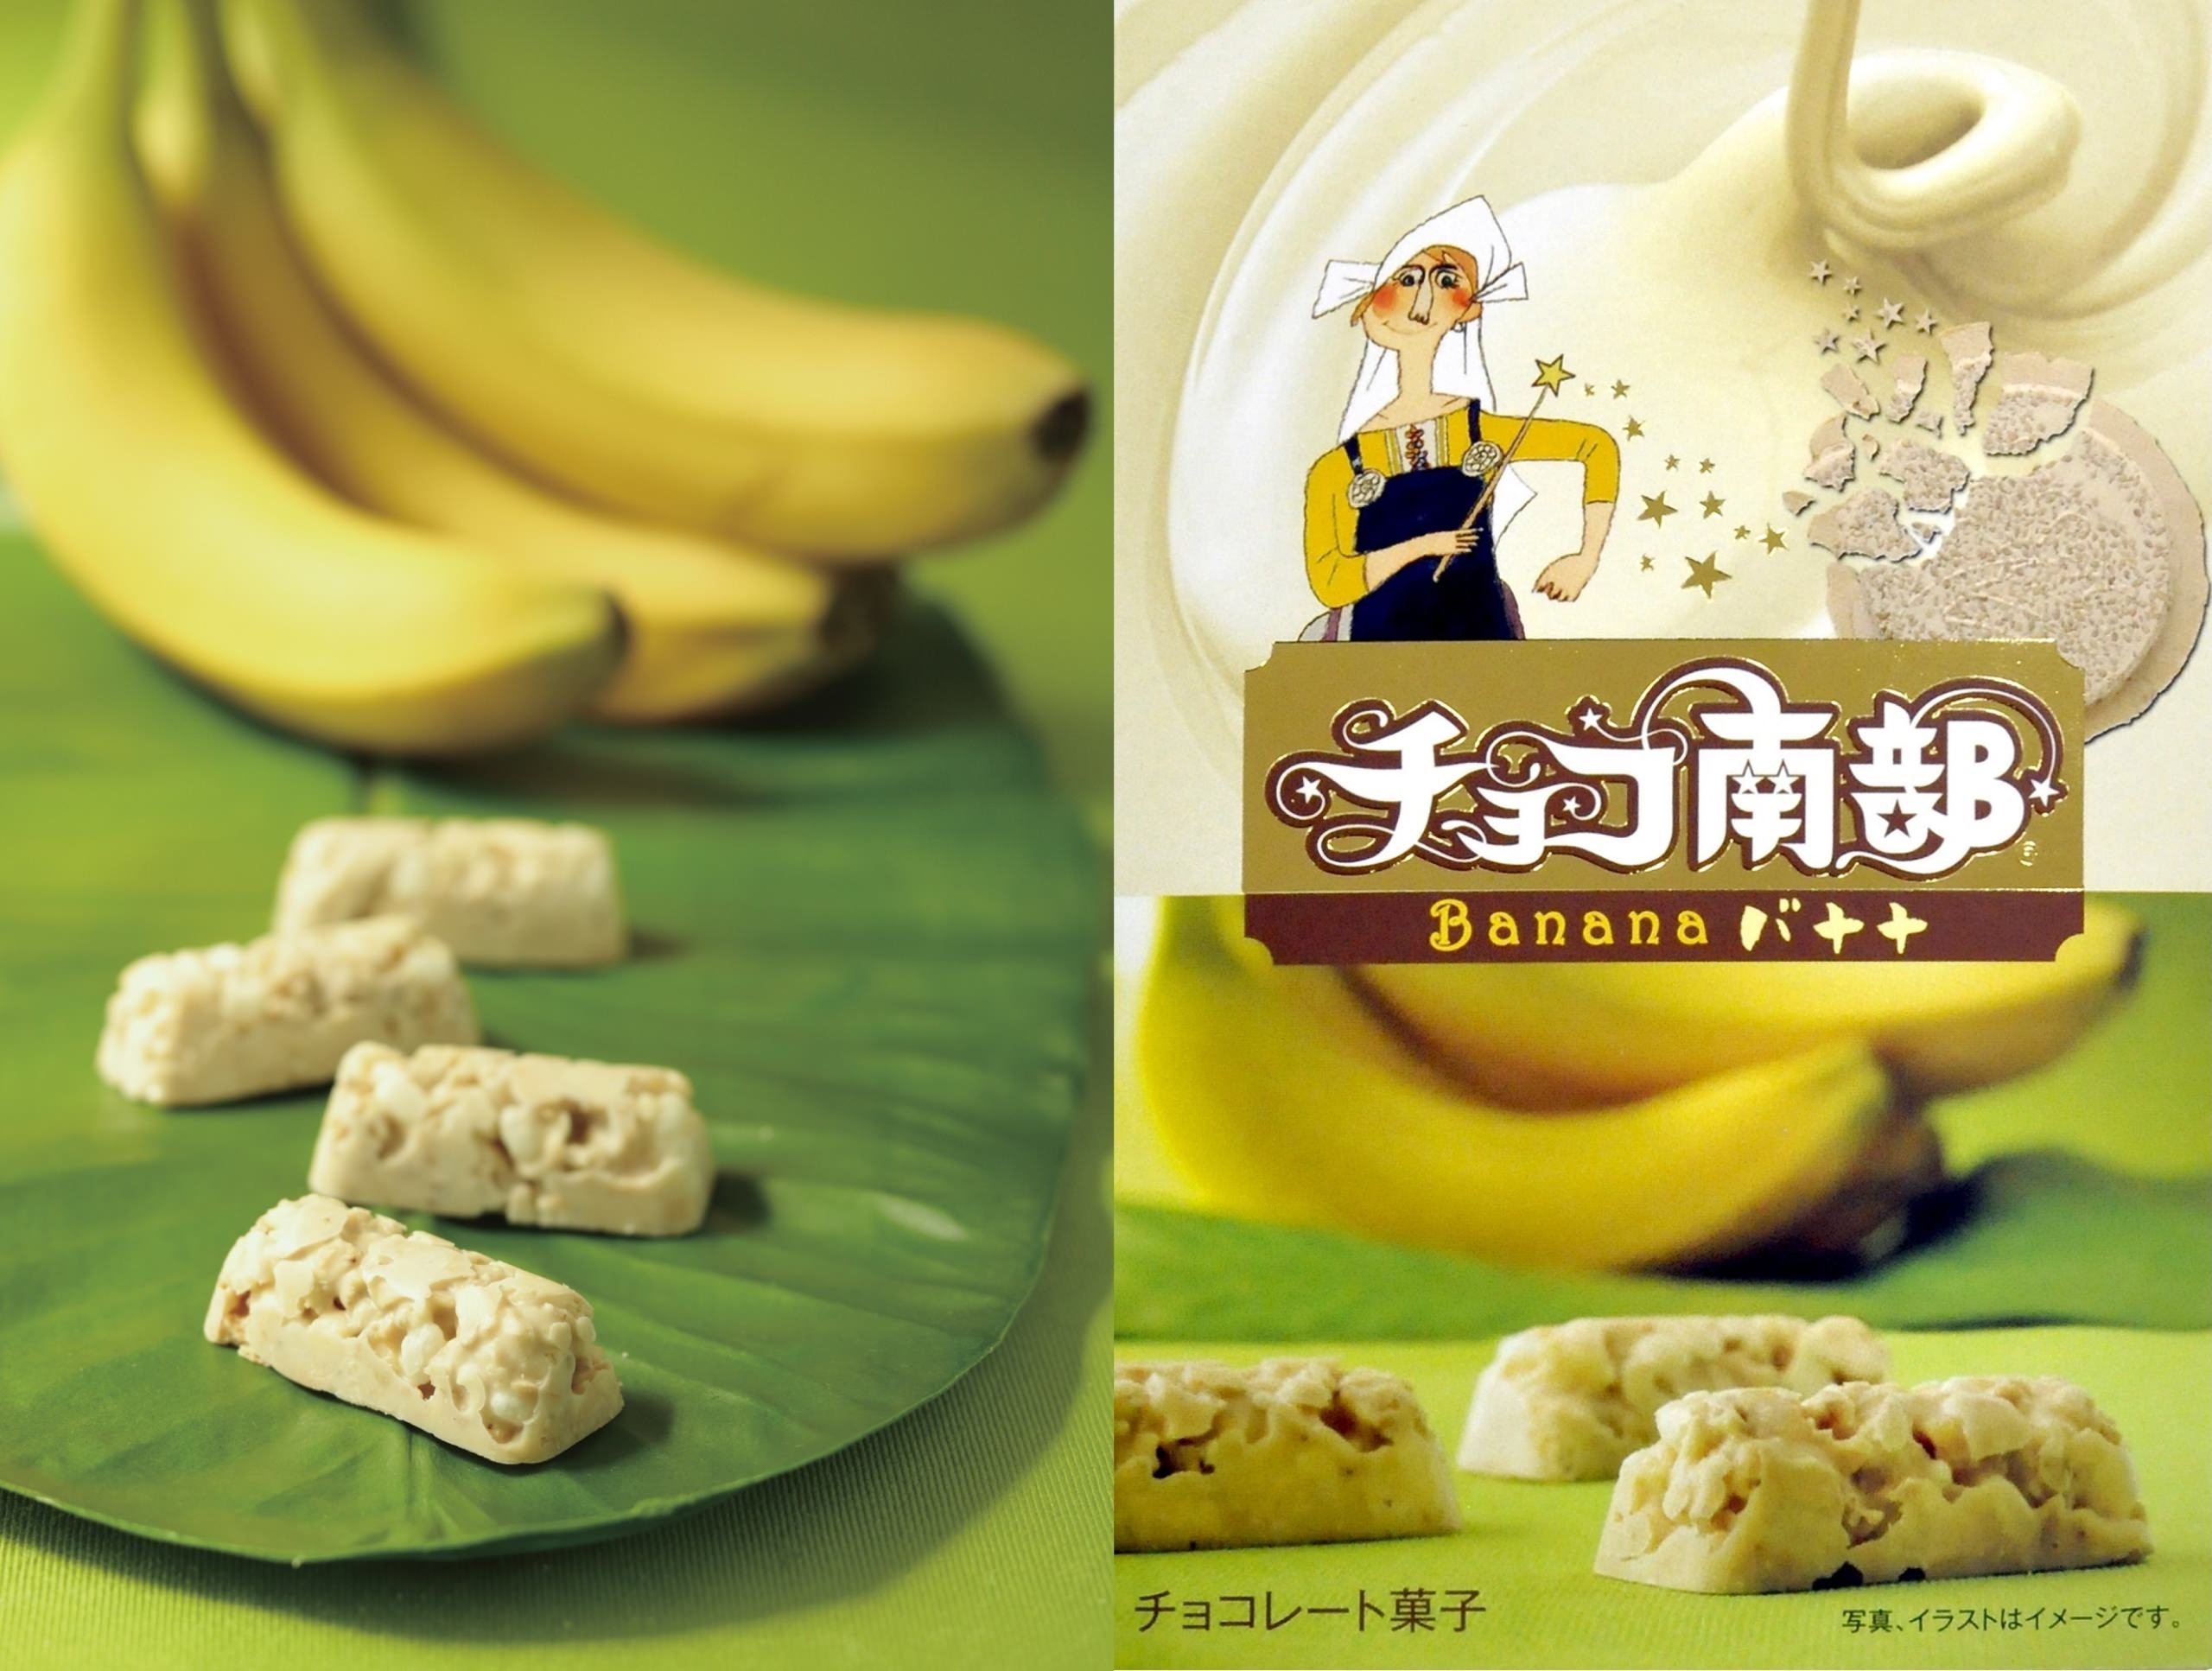 6月1日(火)より夏限定「チョコ南部バナナ」を新発売！
南部せんべい乃巖手屋、今度はホワイトチョコ＆バナナ味